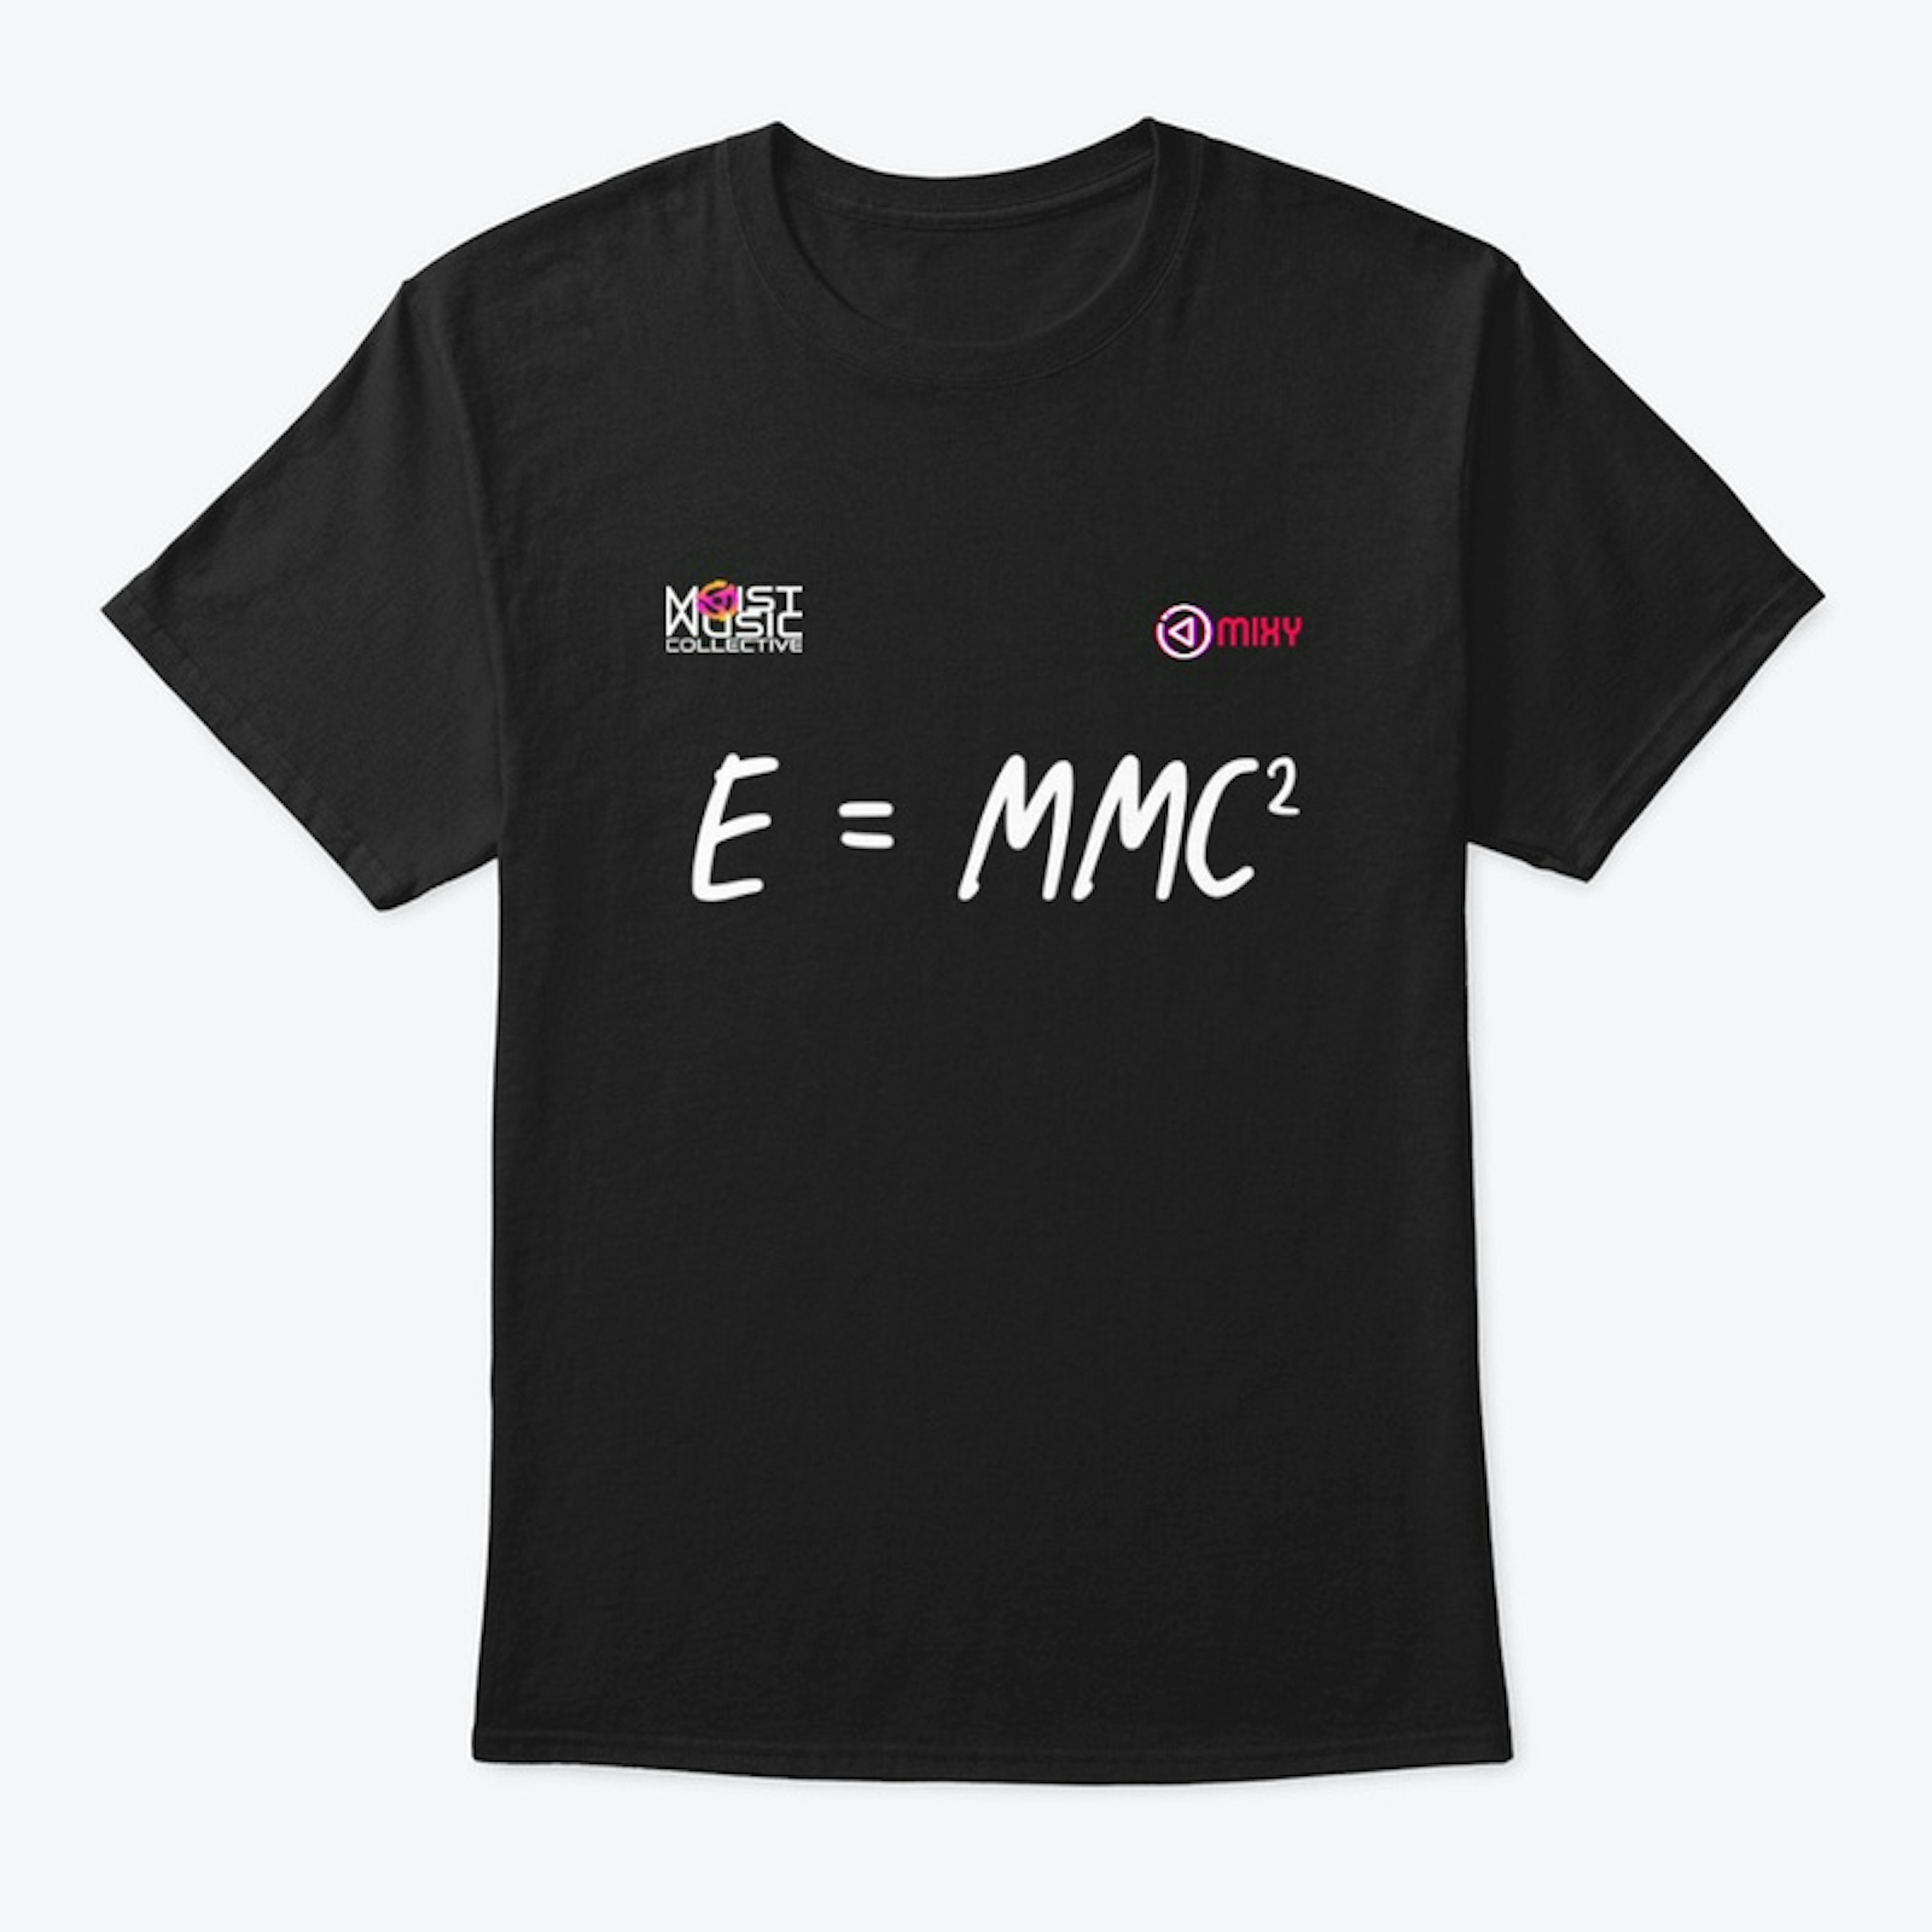 E=MMC2